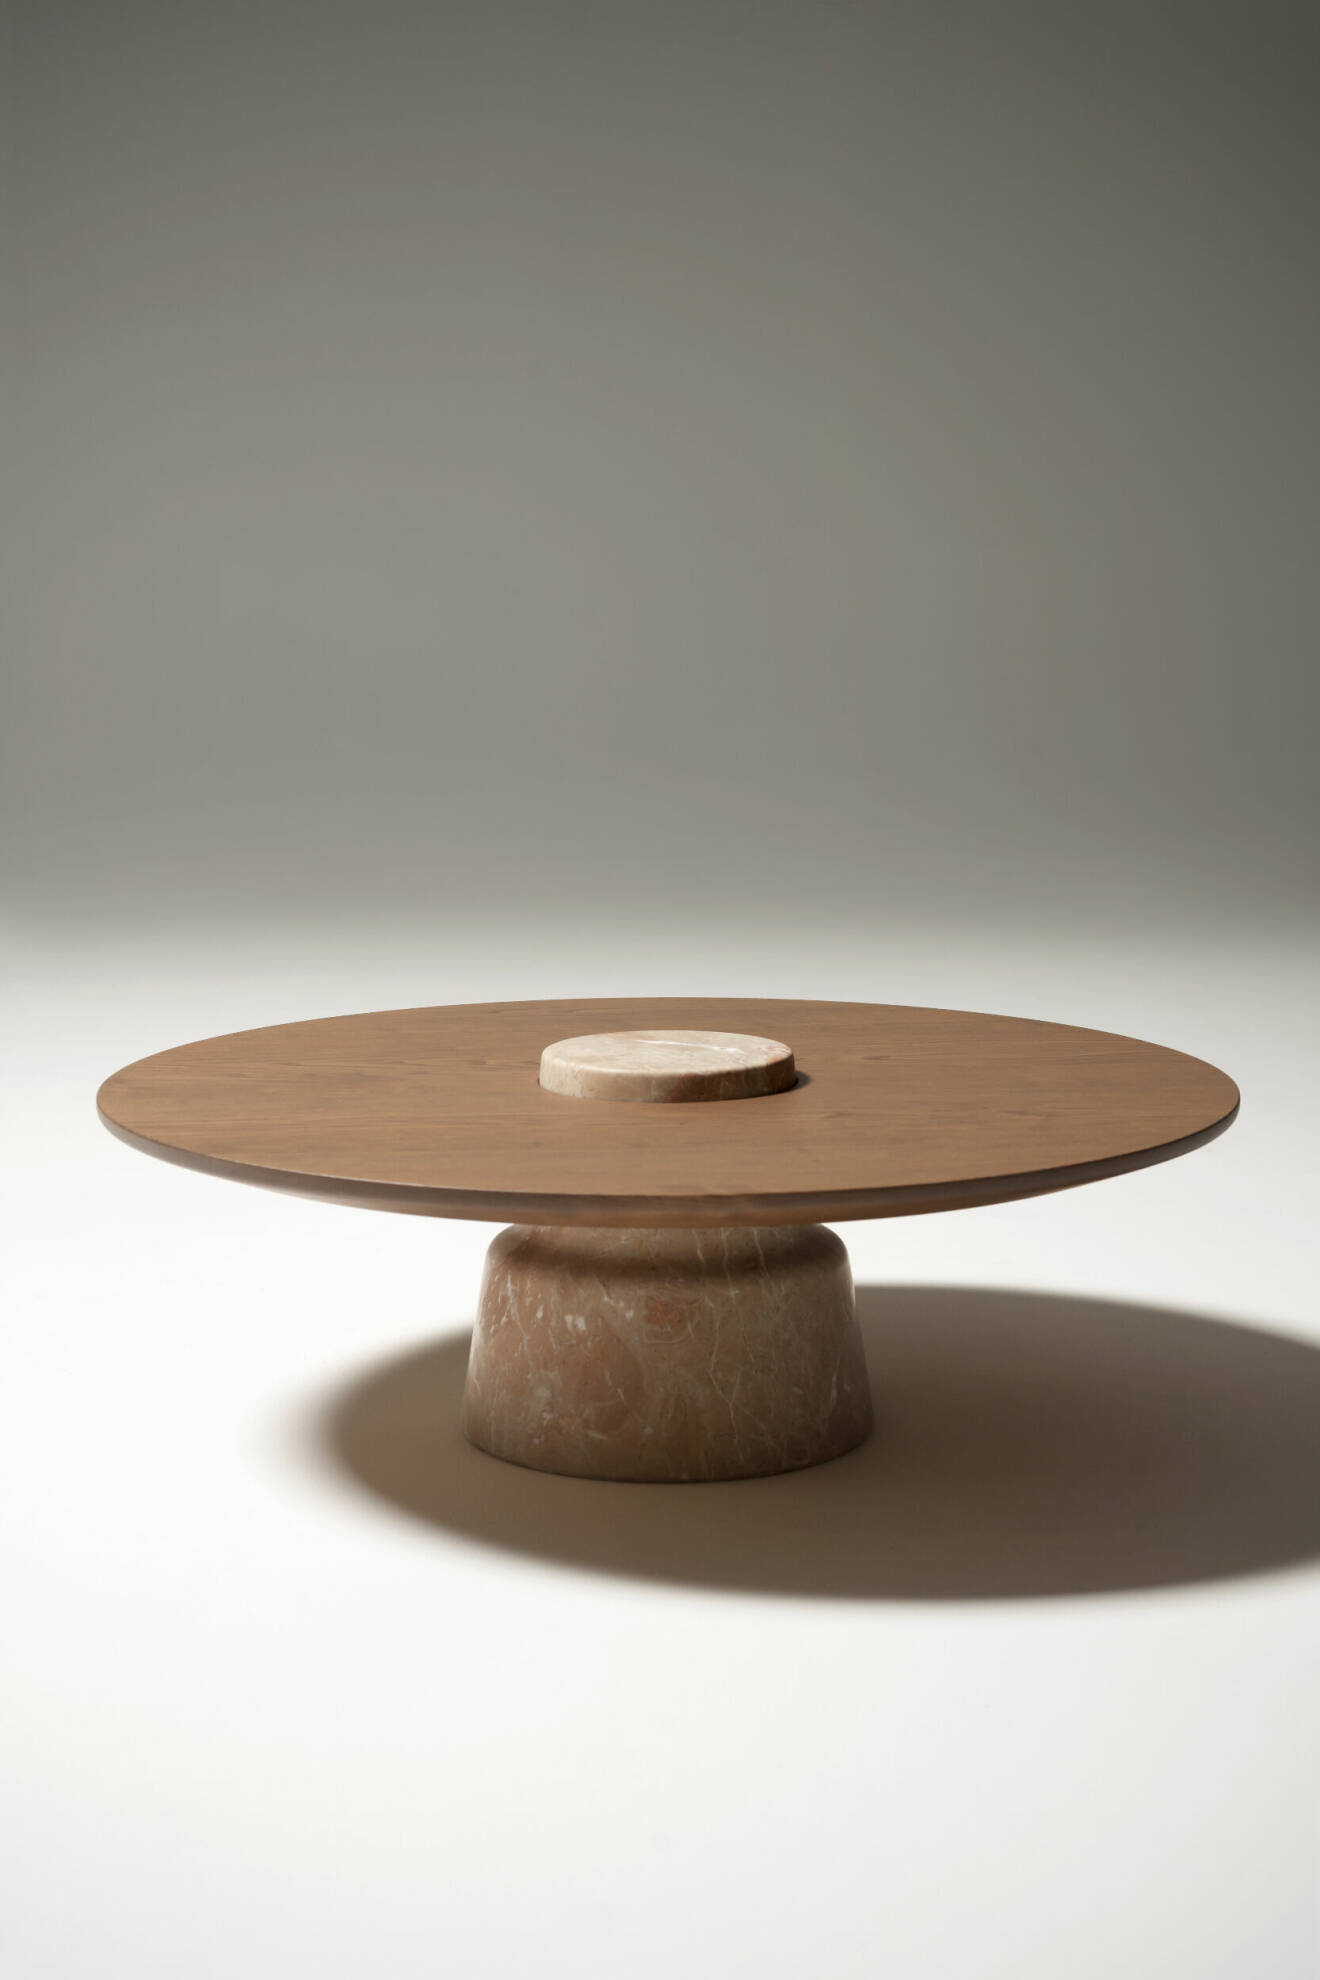 Mill table av Monica Förster design studio för Tacchini.